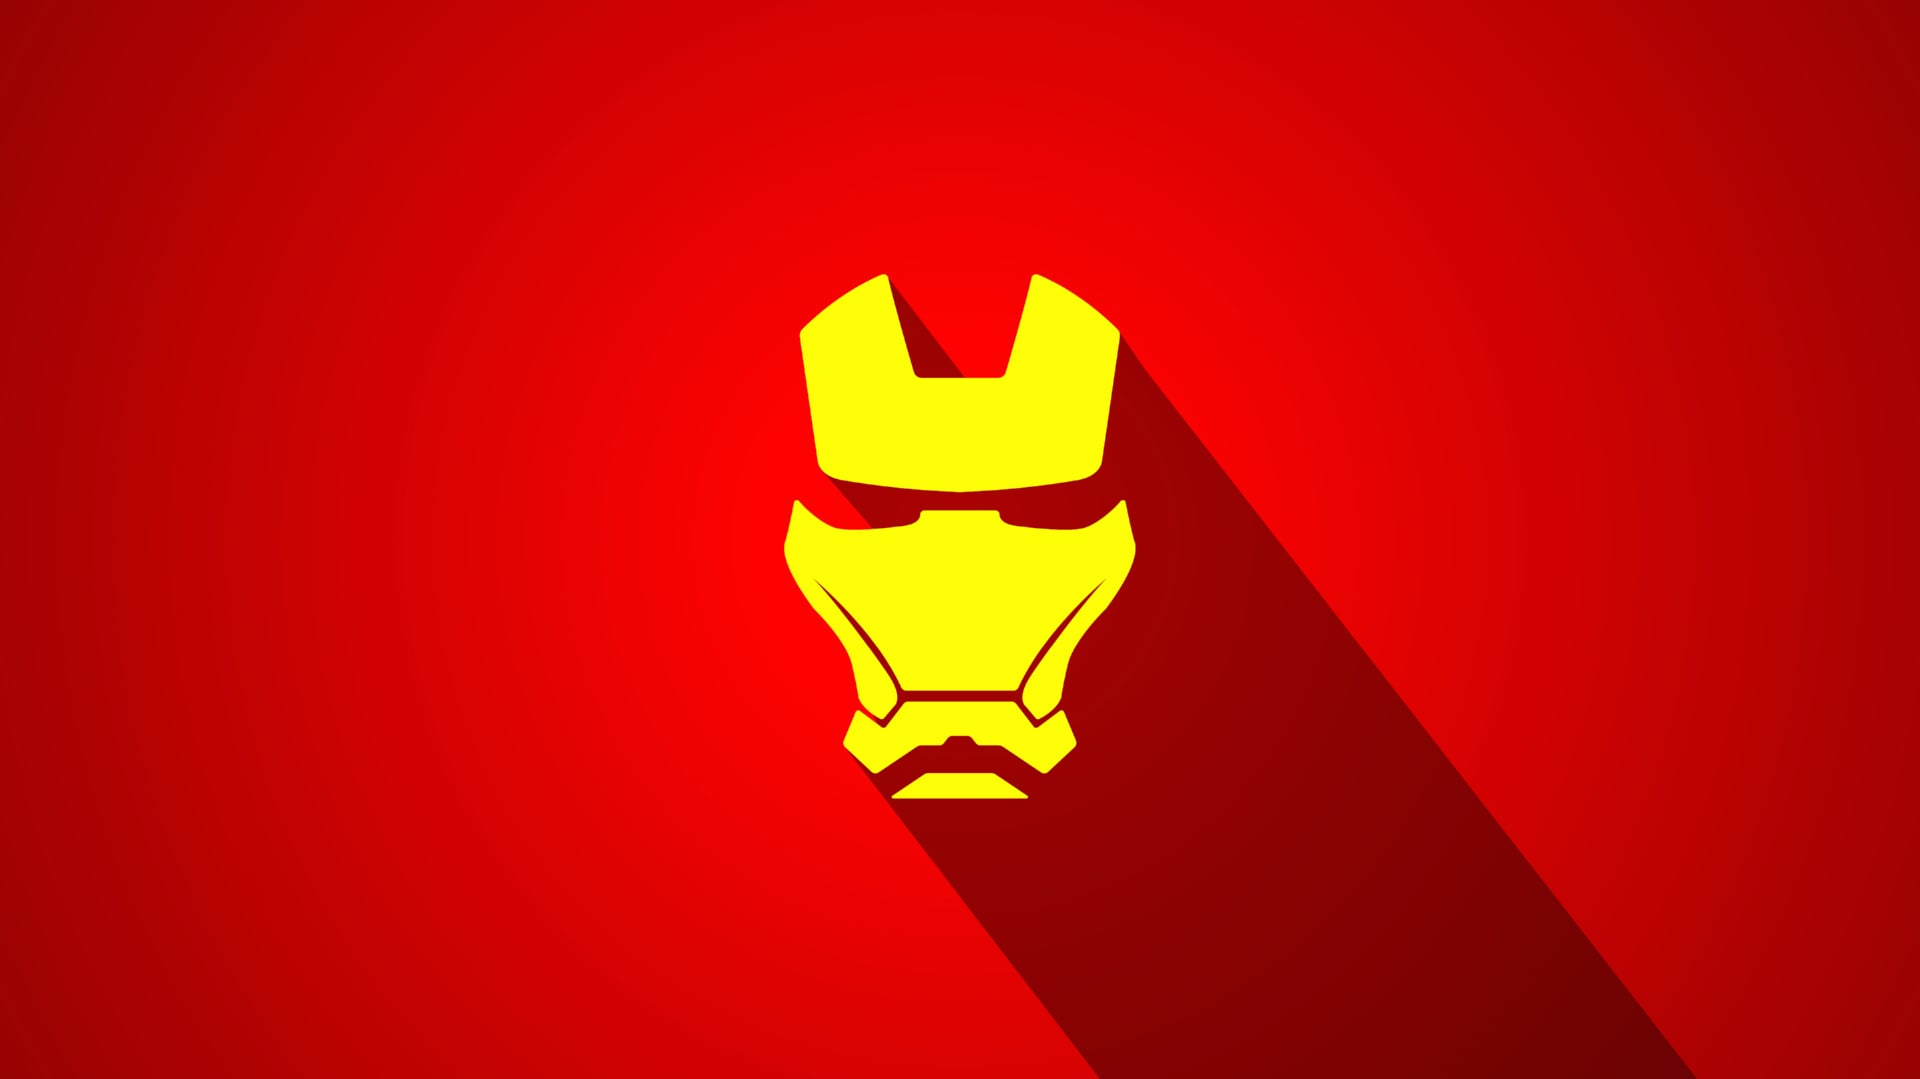 Digital Art Iron Man at 1024 x 1024 iPad size wallpapers HD quality